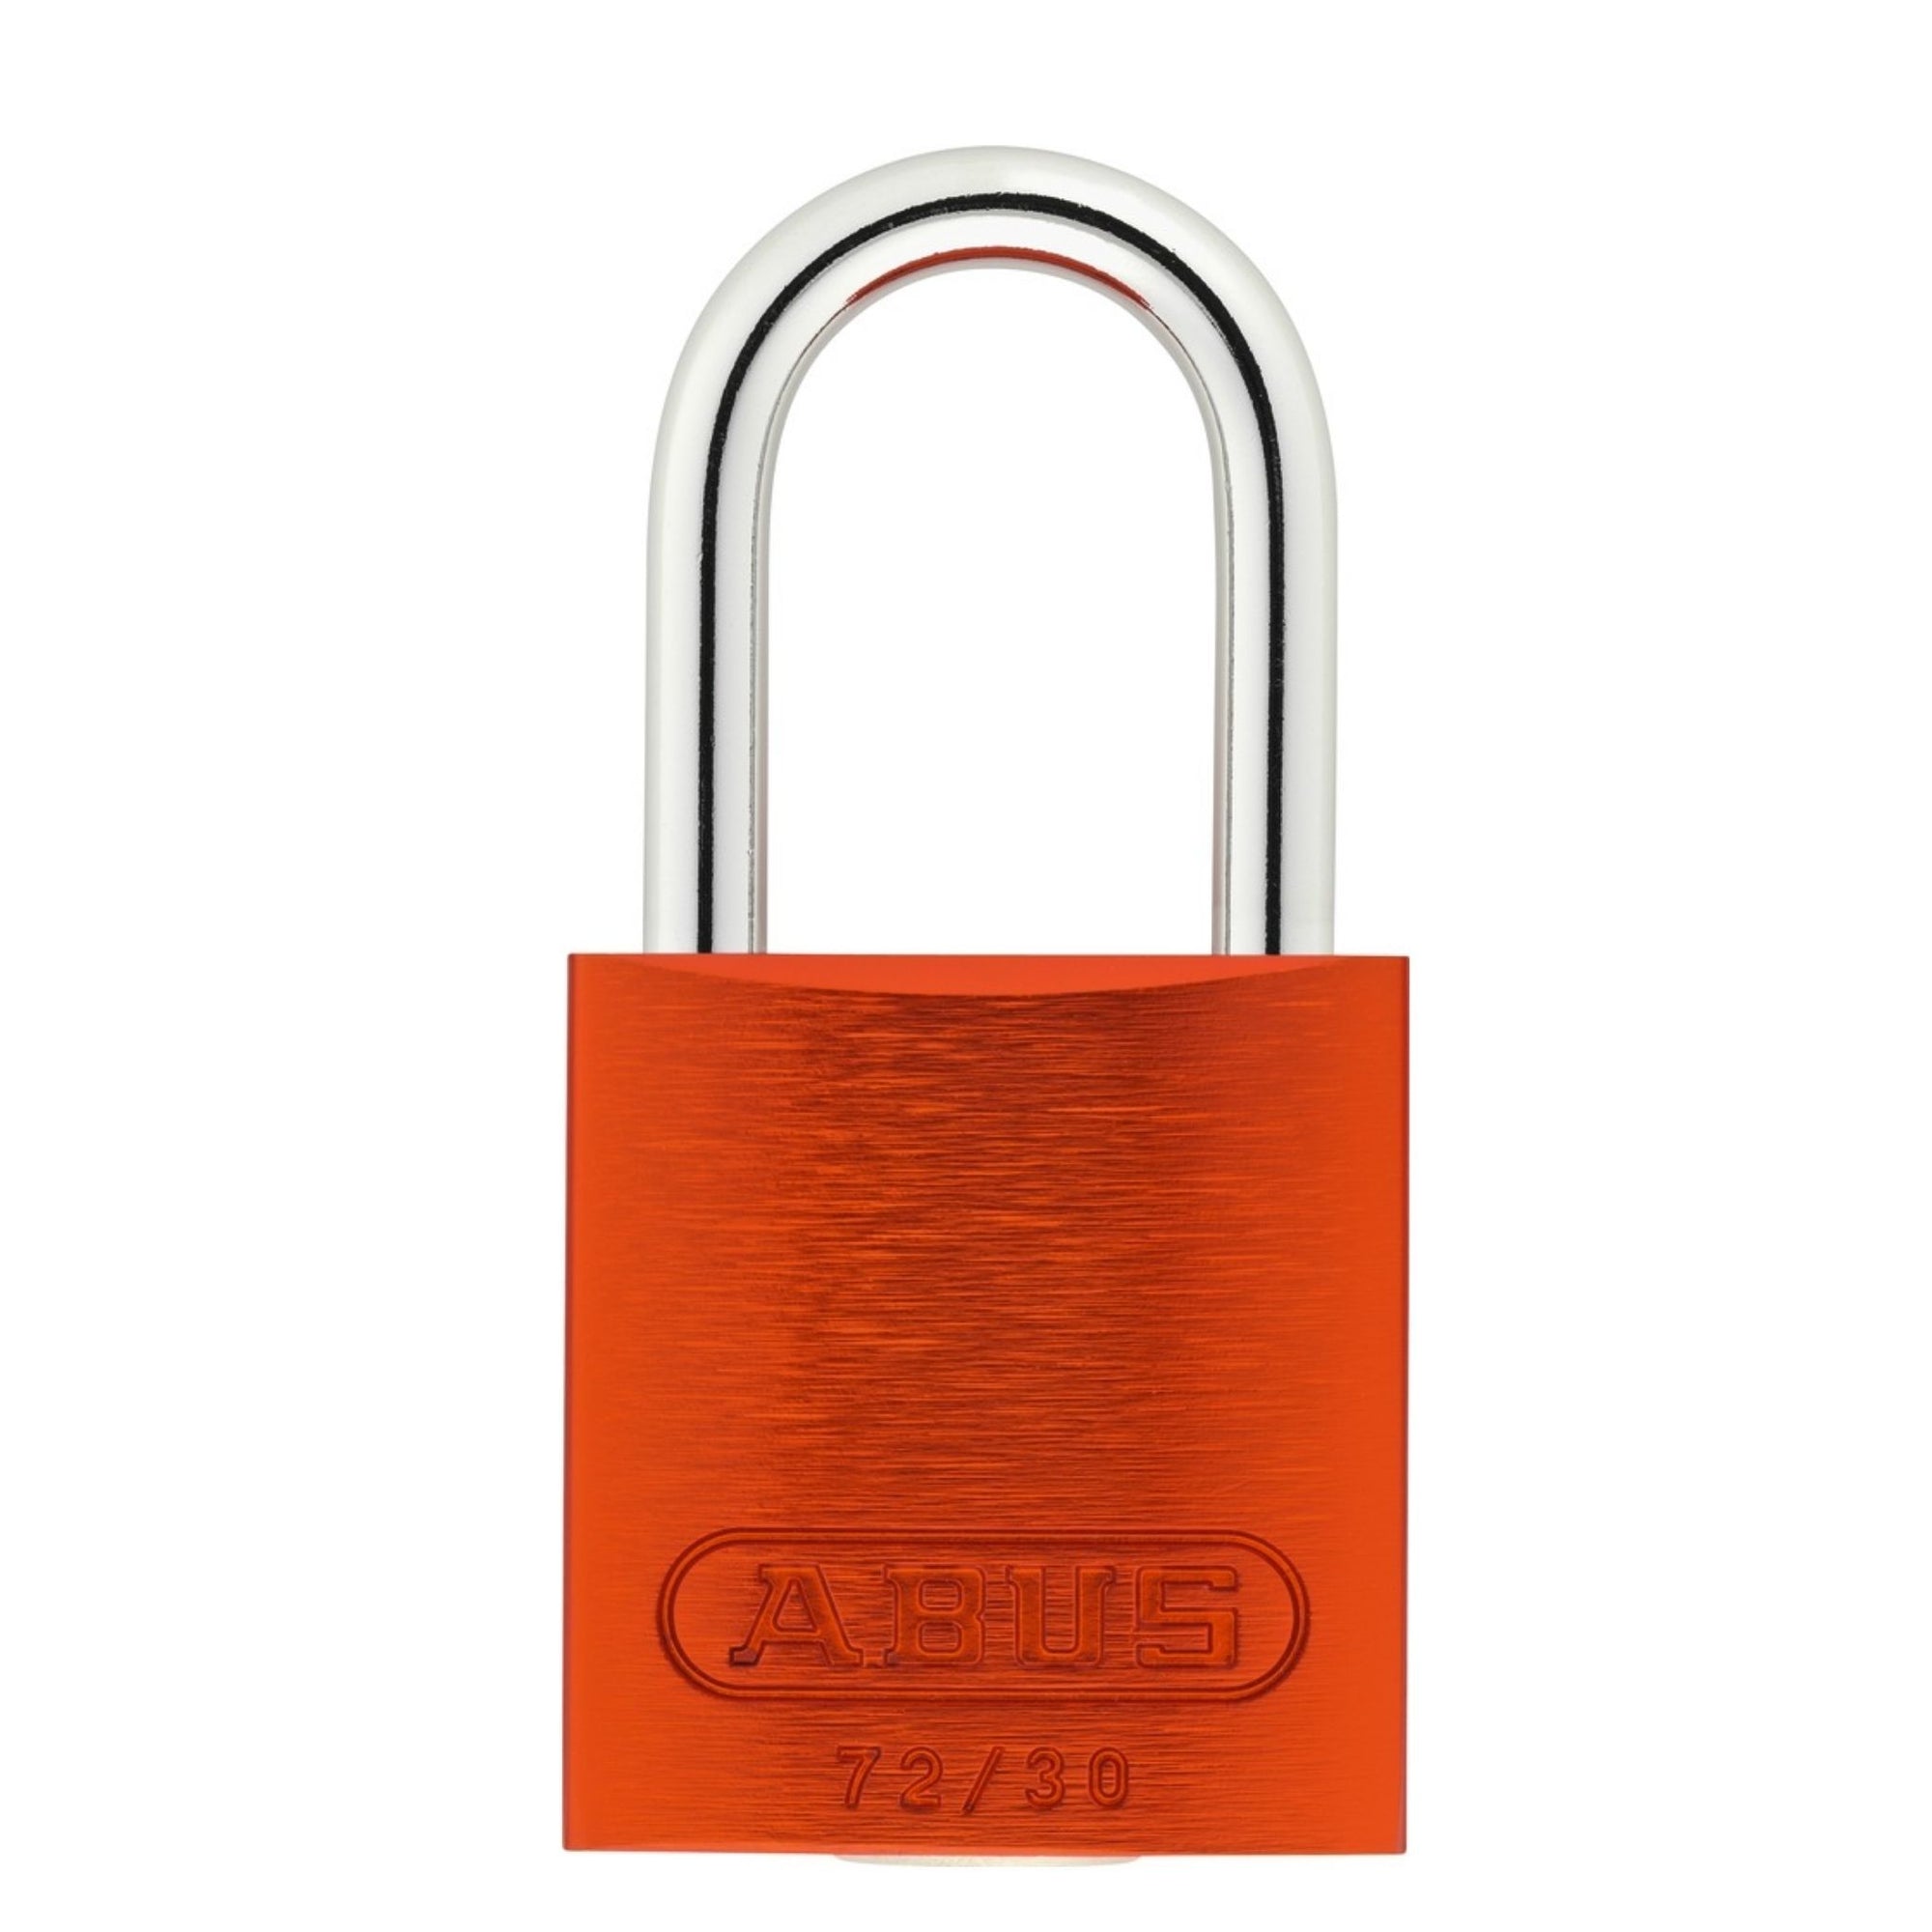 Abus 72/30 MK Orange Aluminum Safety Padlock Master Keyed Locks - The Lock Source